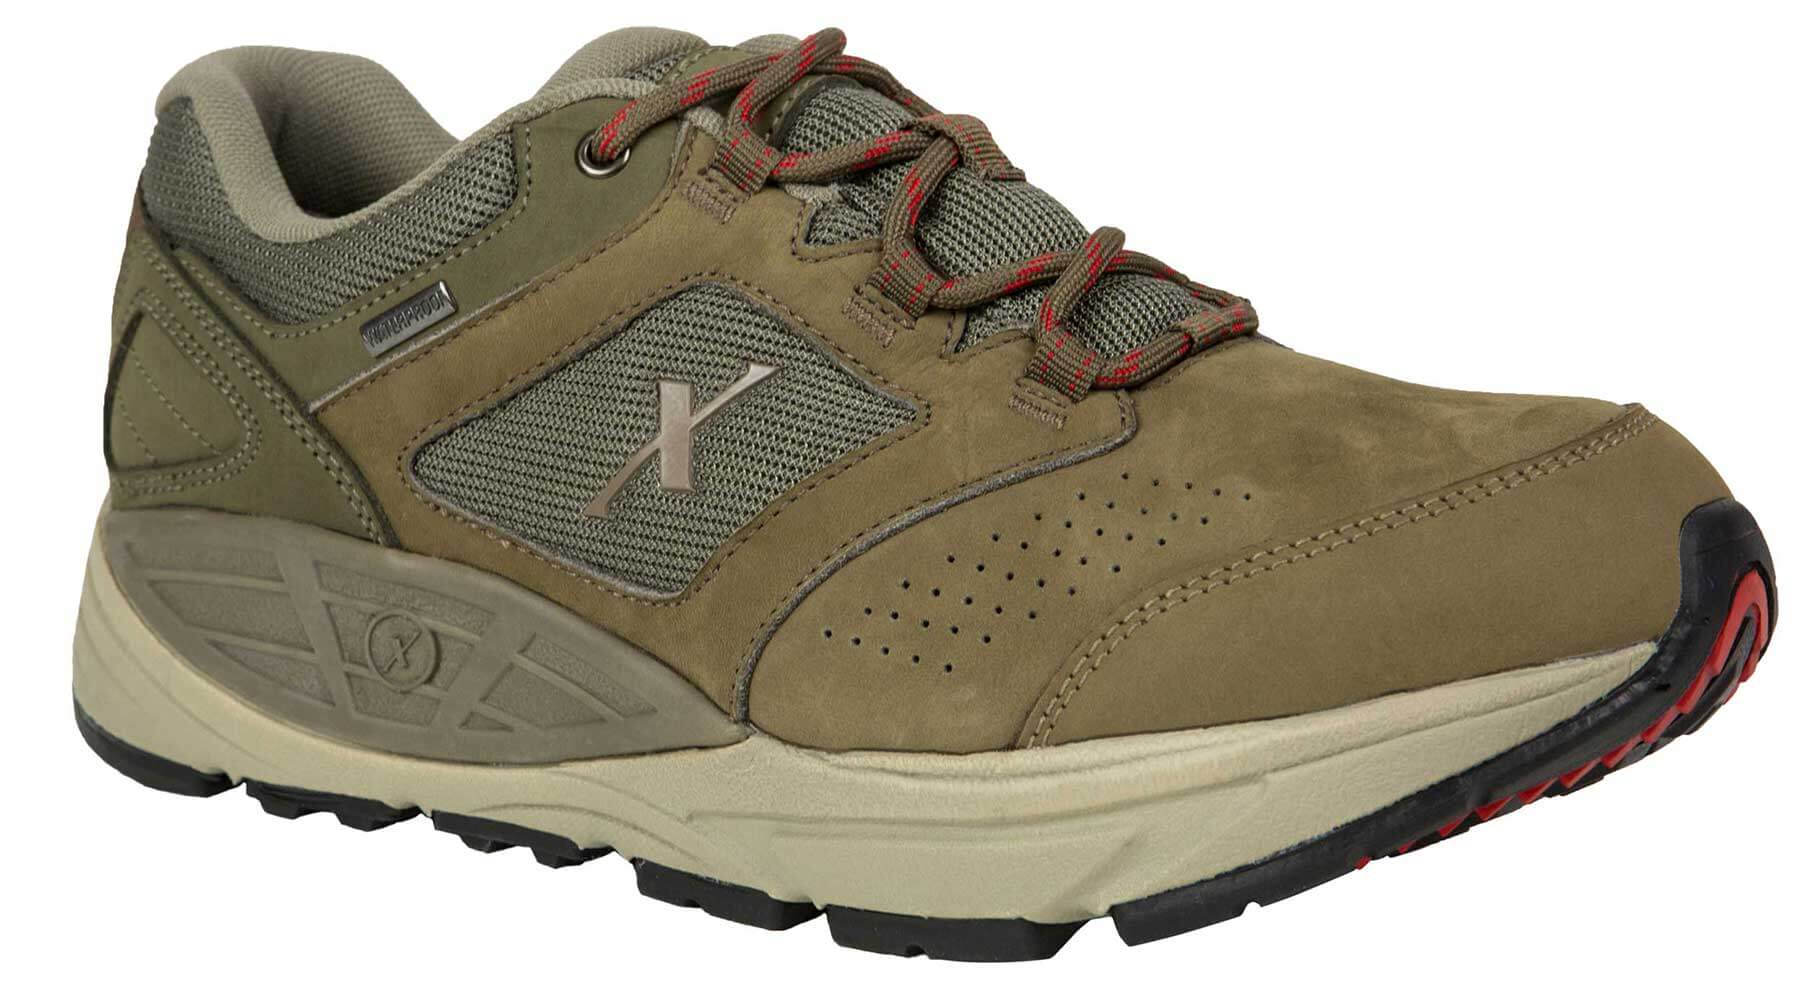 Xelero Hyperion II-low X76504 - Men's 2 Comfort Shoe - Outdoor Hiking Boot - Extra Depth For Orthotics